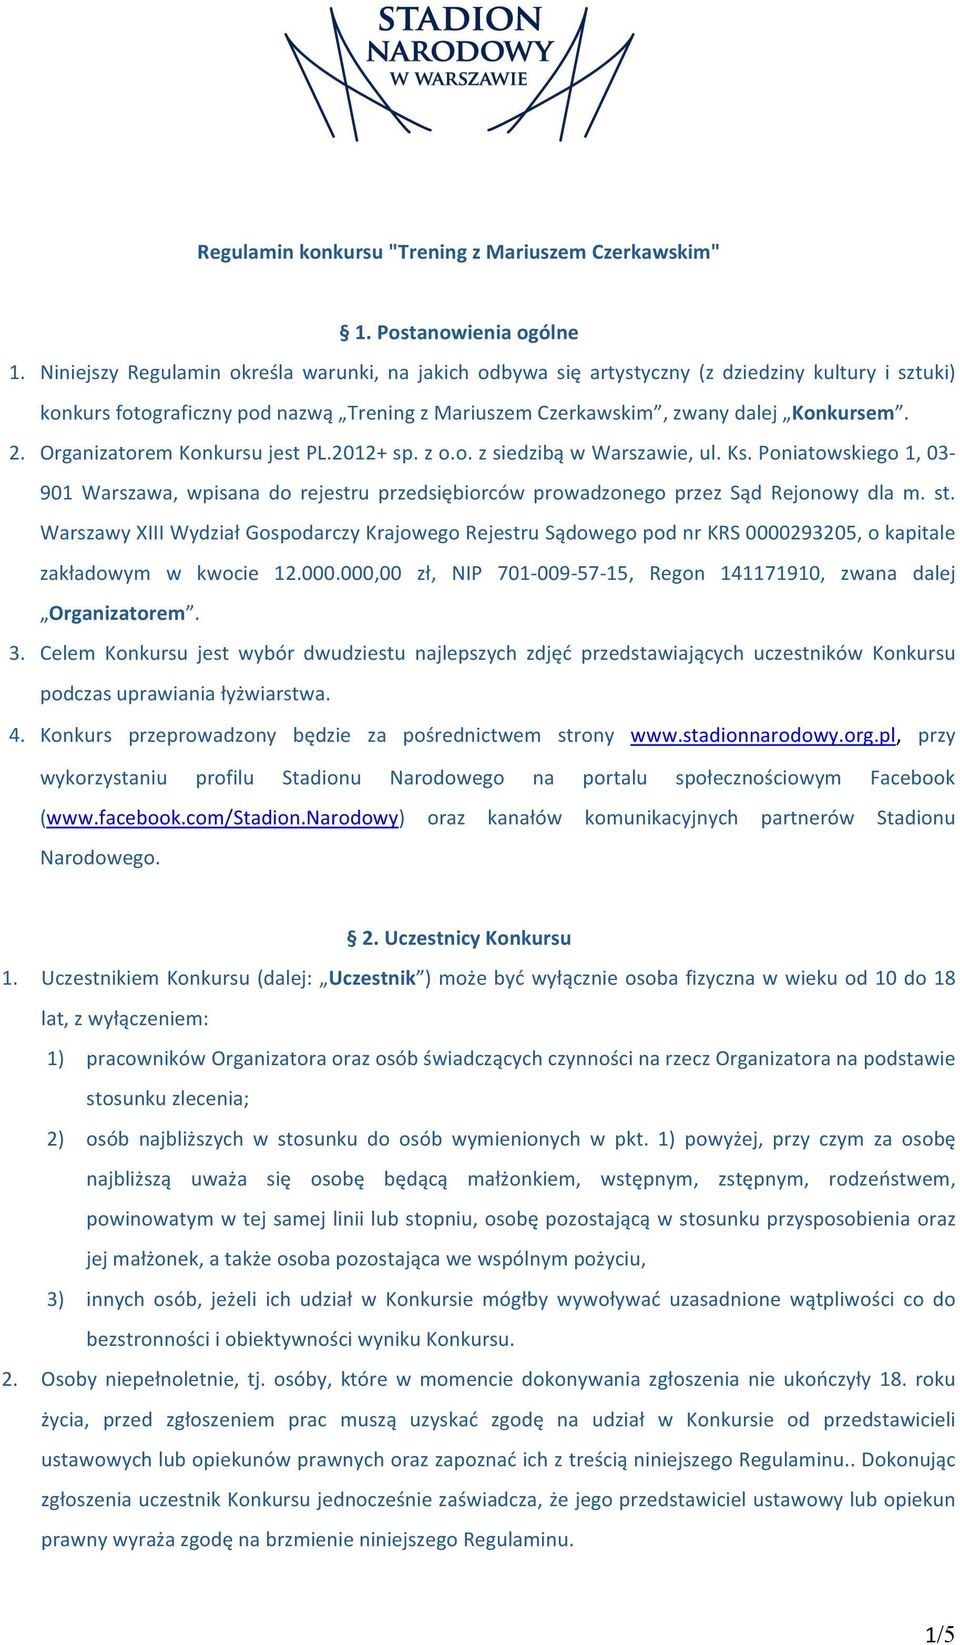 Organizatorem Konkursu jest PL.2012+ sp. z o.o. z siedzibą w Warszawie, ul. Ks. Poniatowskiego 1, 03-901 Warszawa, wpisana do rejestru przedsiębiorców prowadzonego przez Sąd Rejonowy dla m. st.